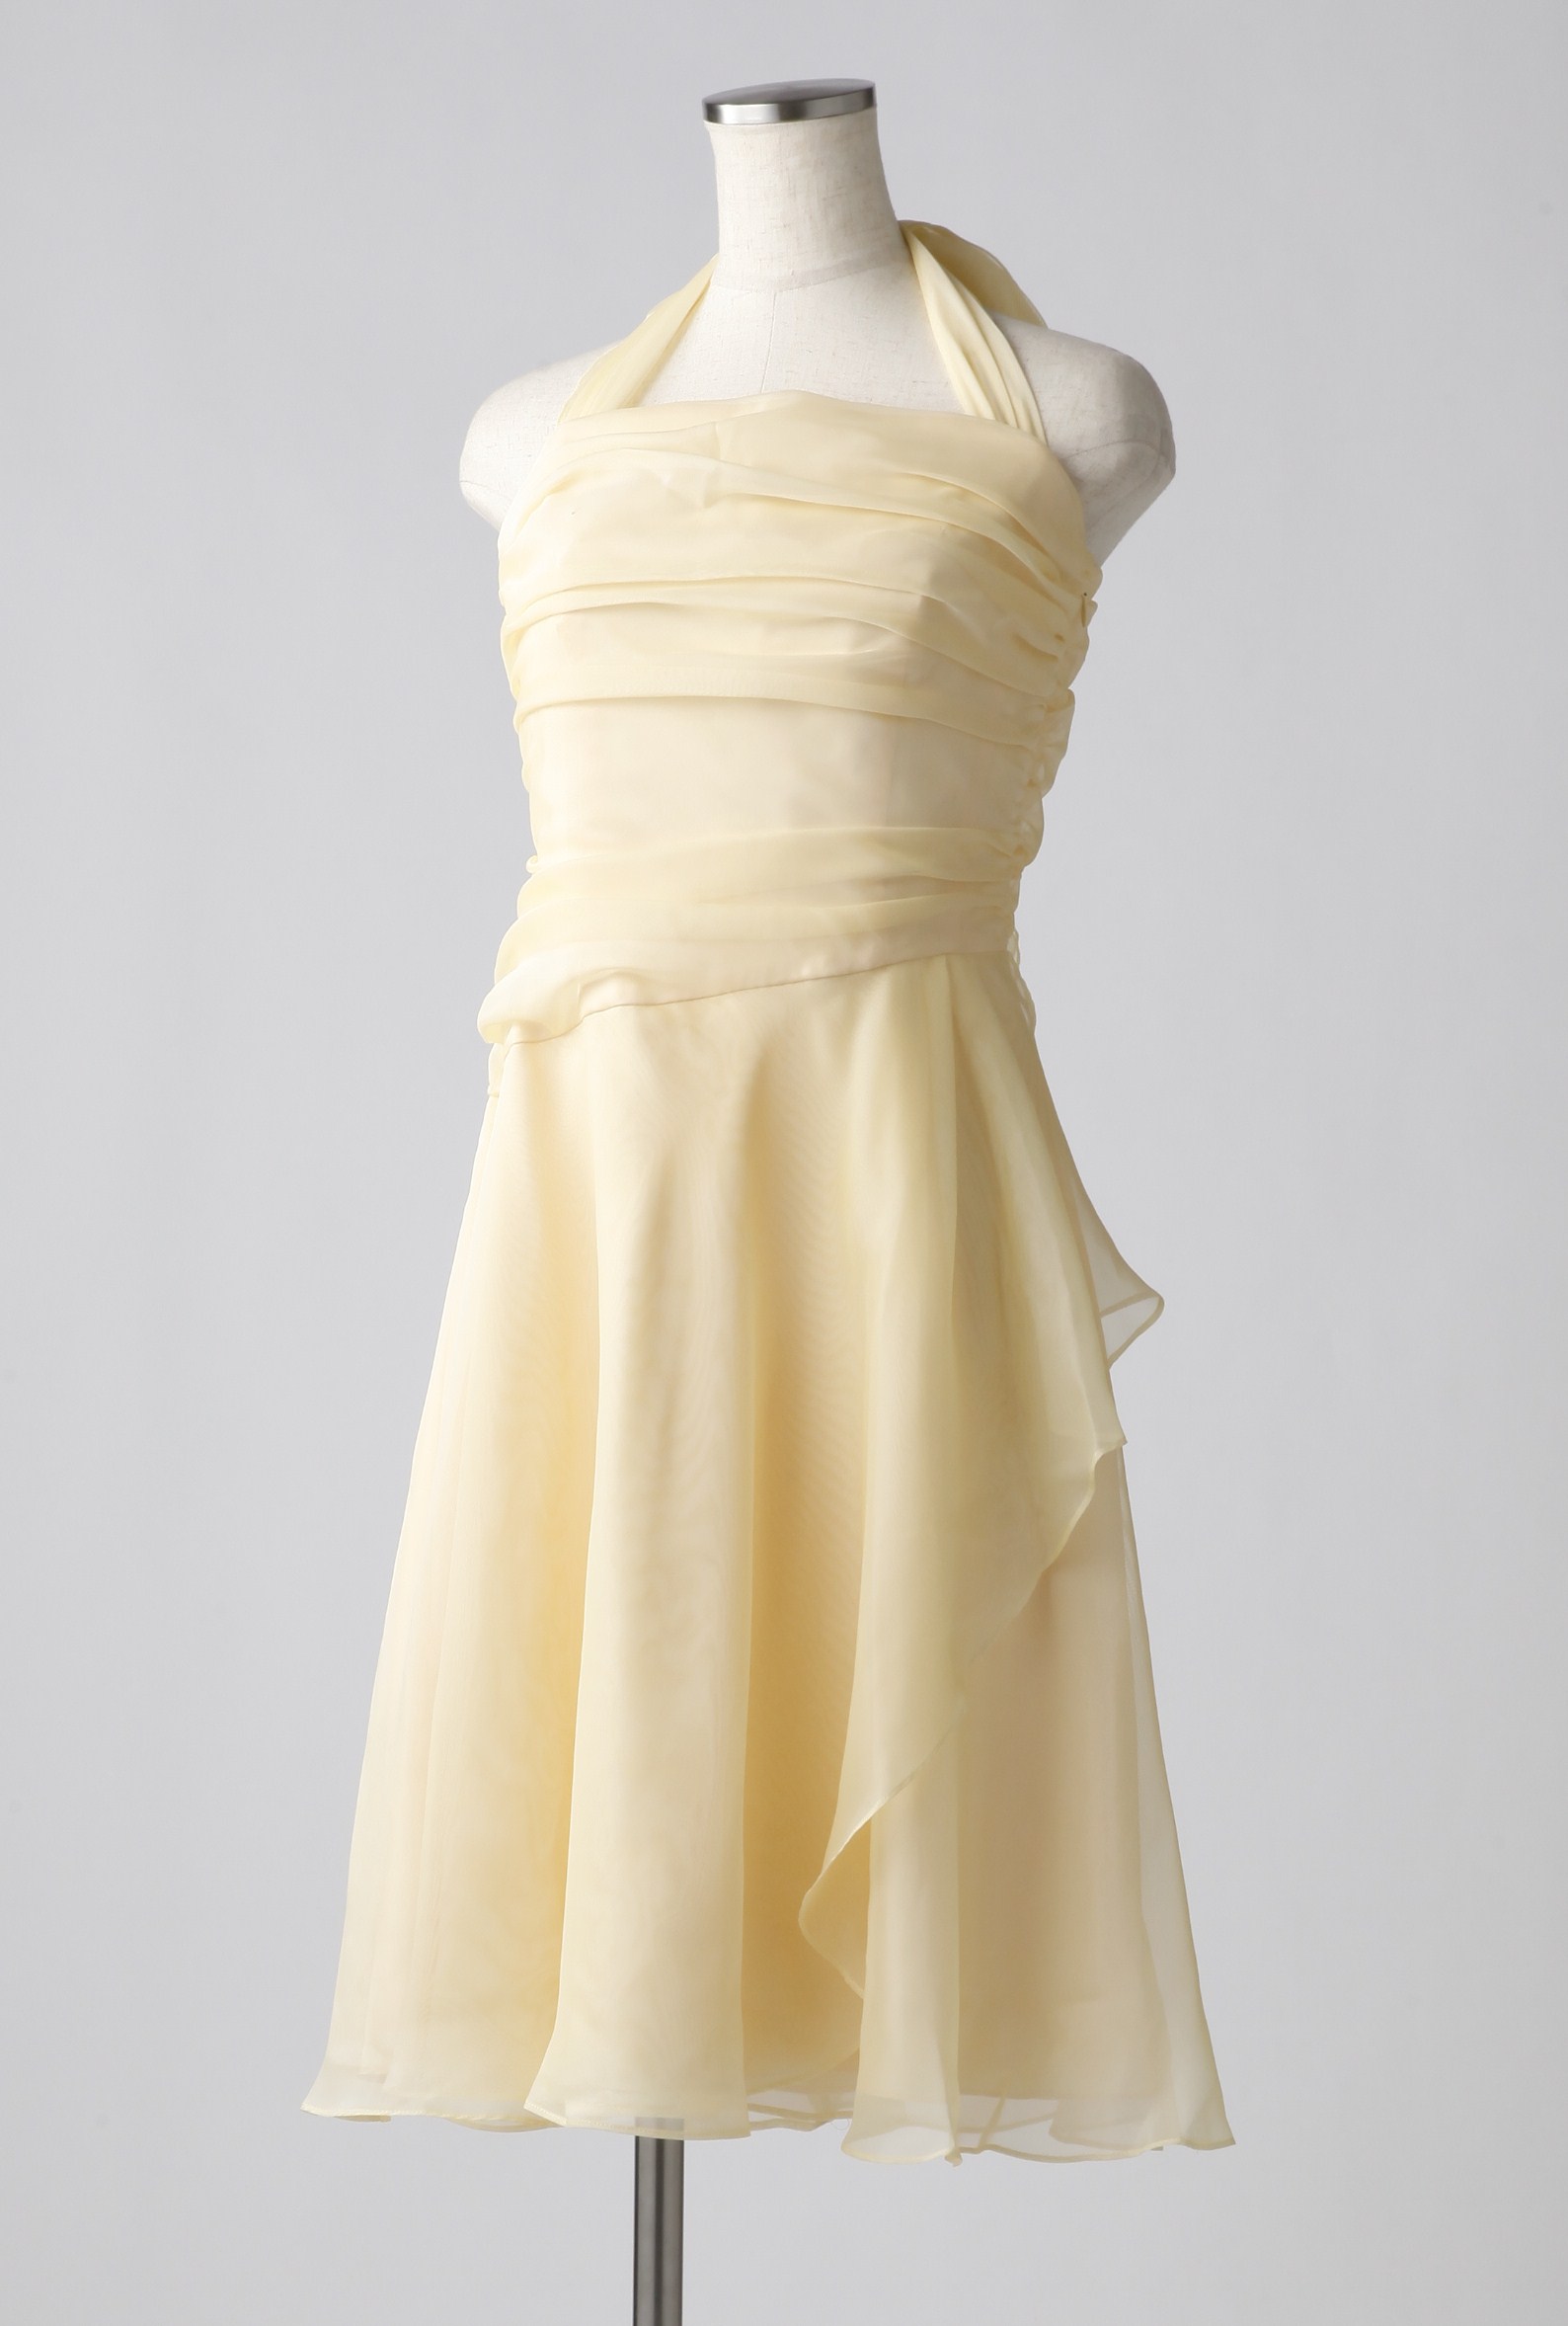 Genet Vivienのクリームイエローのふんわりホルターネックドレス